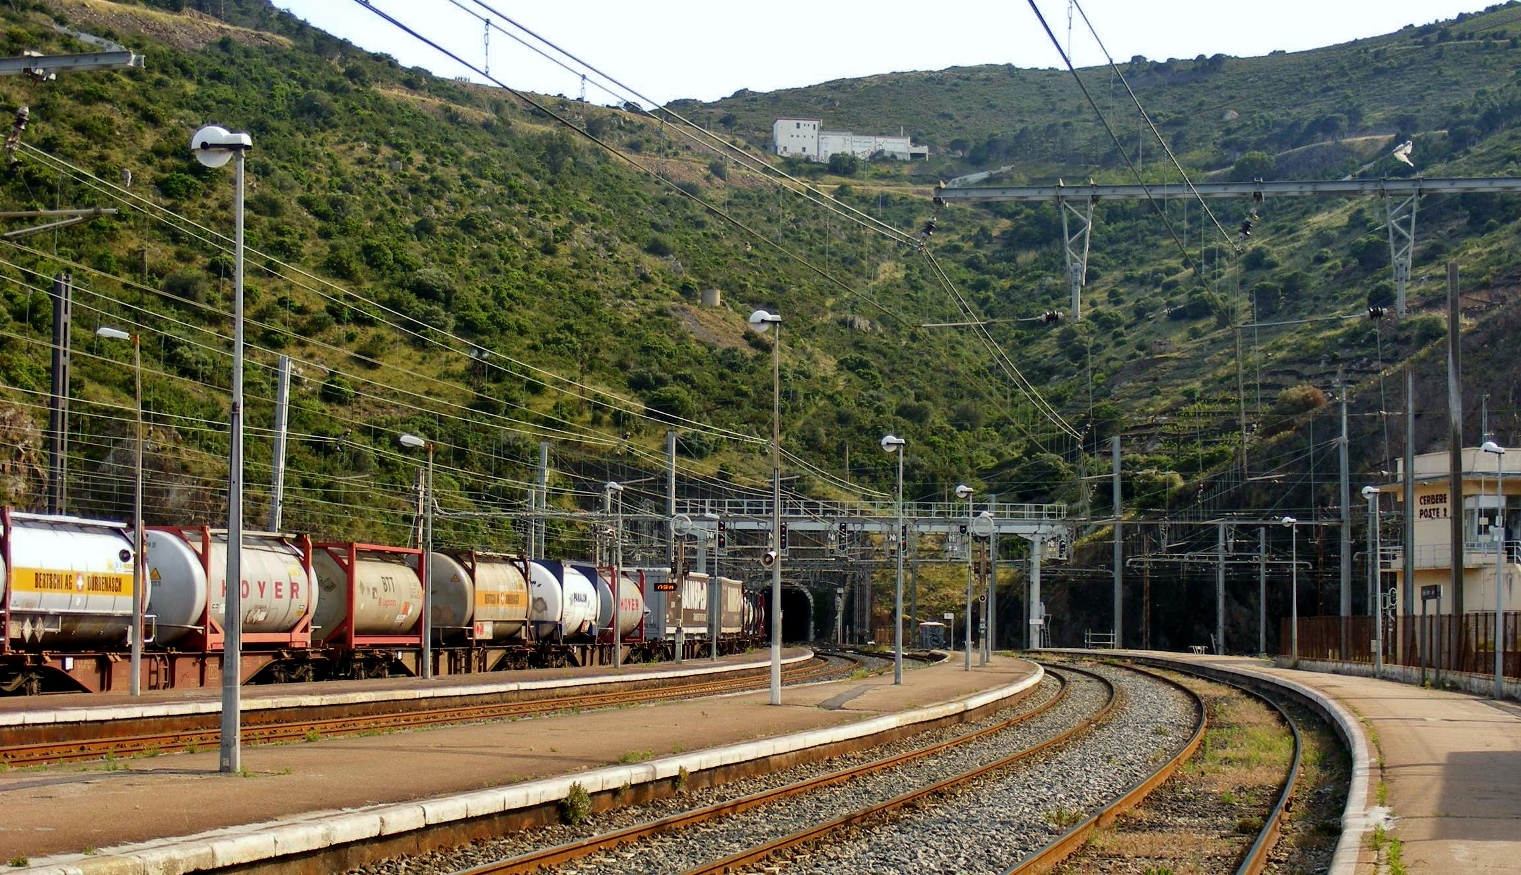 Cerbère állomás még 2013-ban, a jobb oldali vágány széles, a tőle balra lévők pedig normál nyomtávúak. A háttérben a két ország közötti alagút bejárata látható